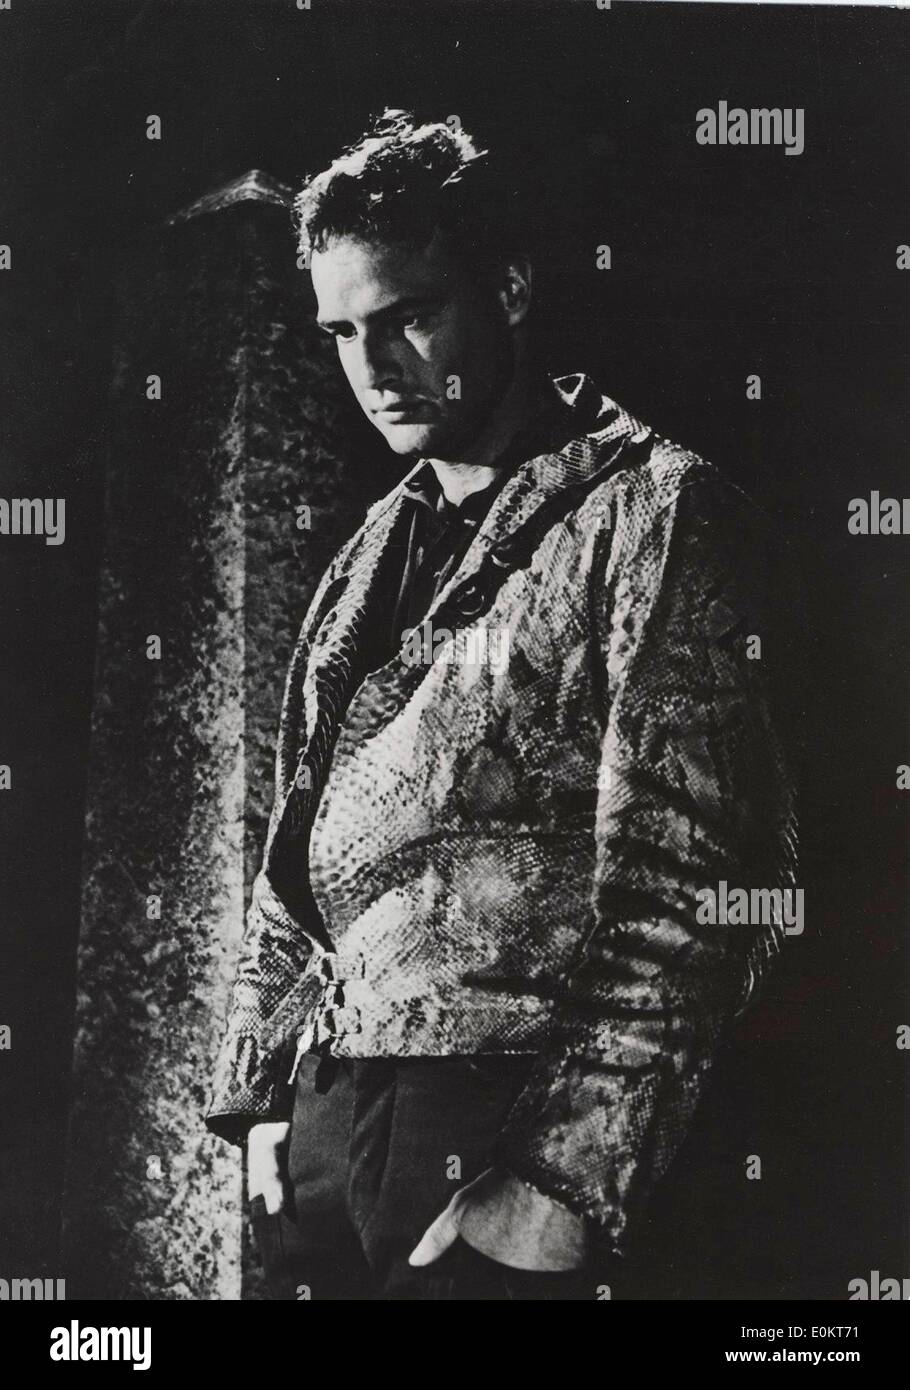 Gen 01, 1950 - Hollywood, California, Stati Uniti - File foto: circa 1950. Il leggendario attore Marlon Brando è morto all'età di 80 anni di cause sconosciute a Los Angeles. La sua lunga carriera inclusi i film come "A Streetcar Named Desire', 'Apocalypse Now", il X-rated 'Ultimo Tango a Parigi" e (nella foto) il suo famigerato "Il Padrino". Nella foto: Palce, Set sconosciuto. Foto Stock